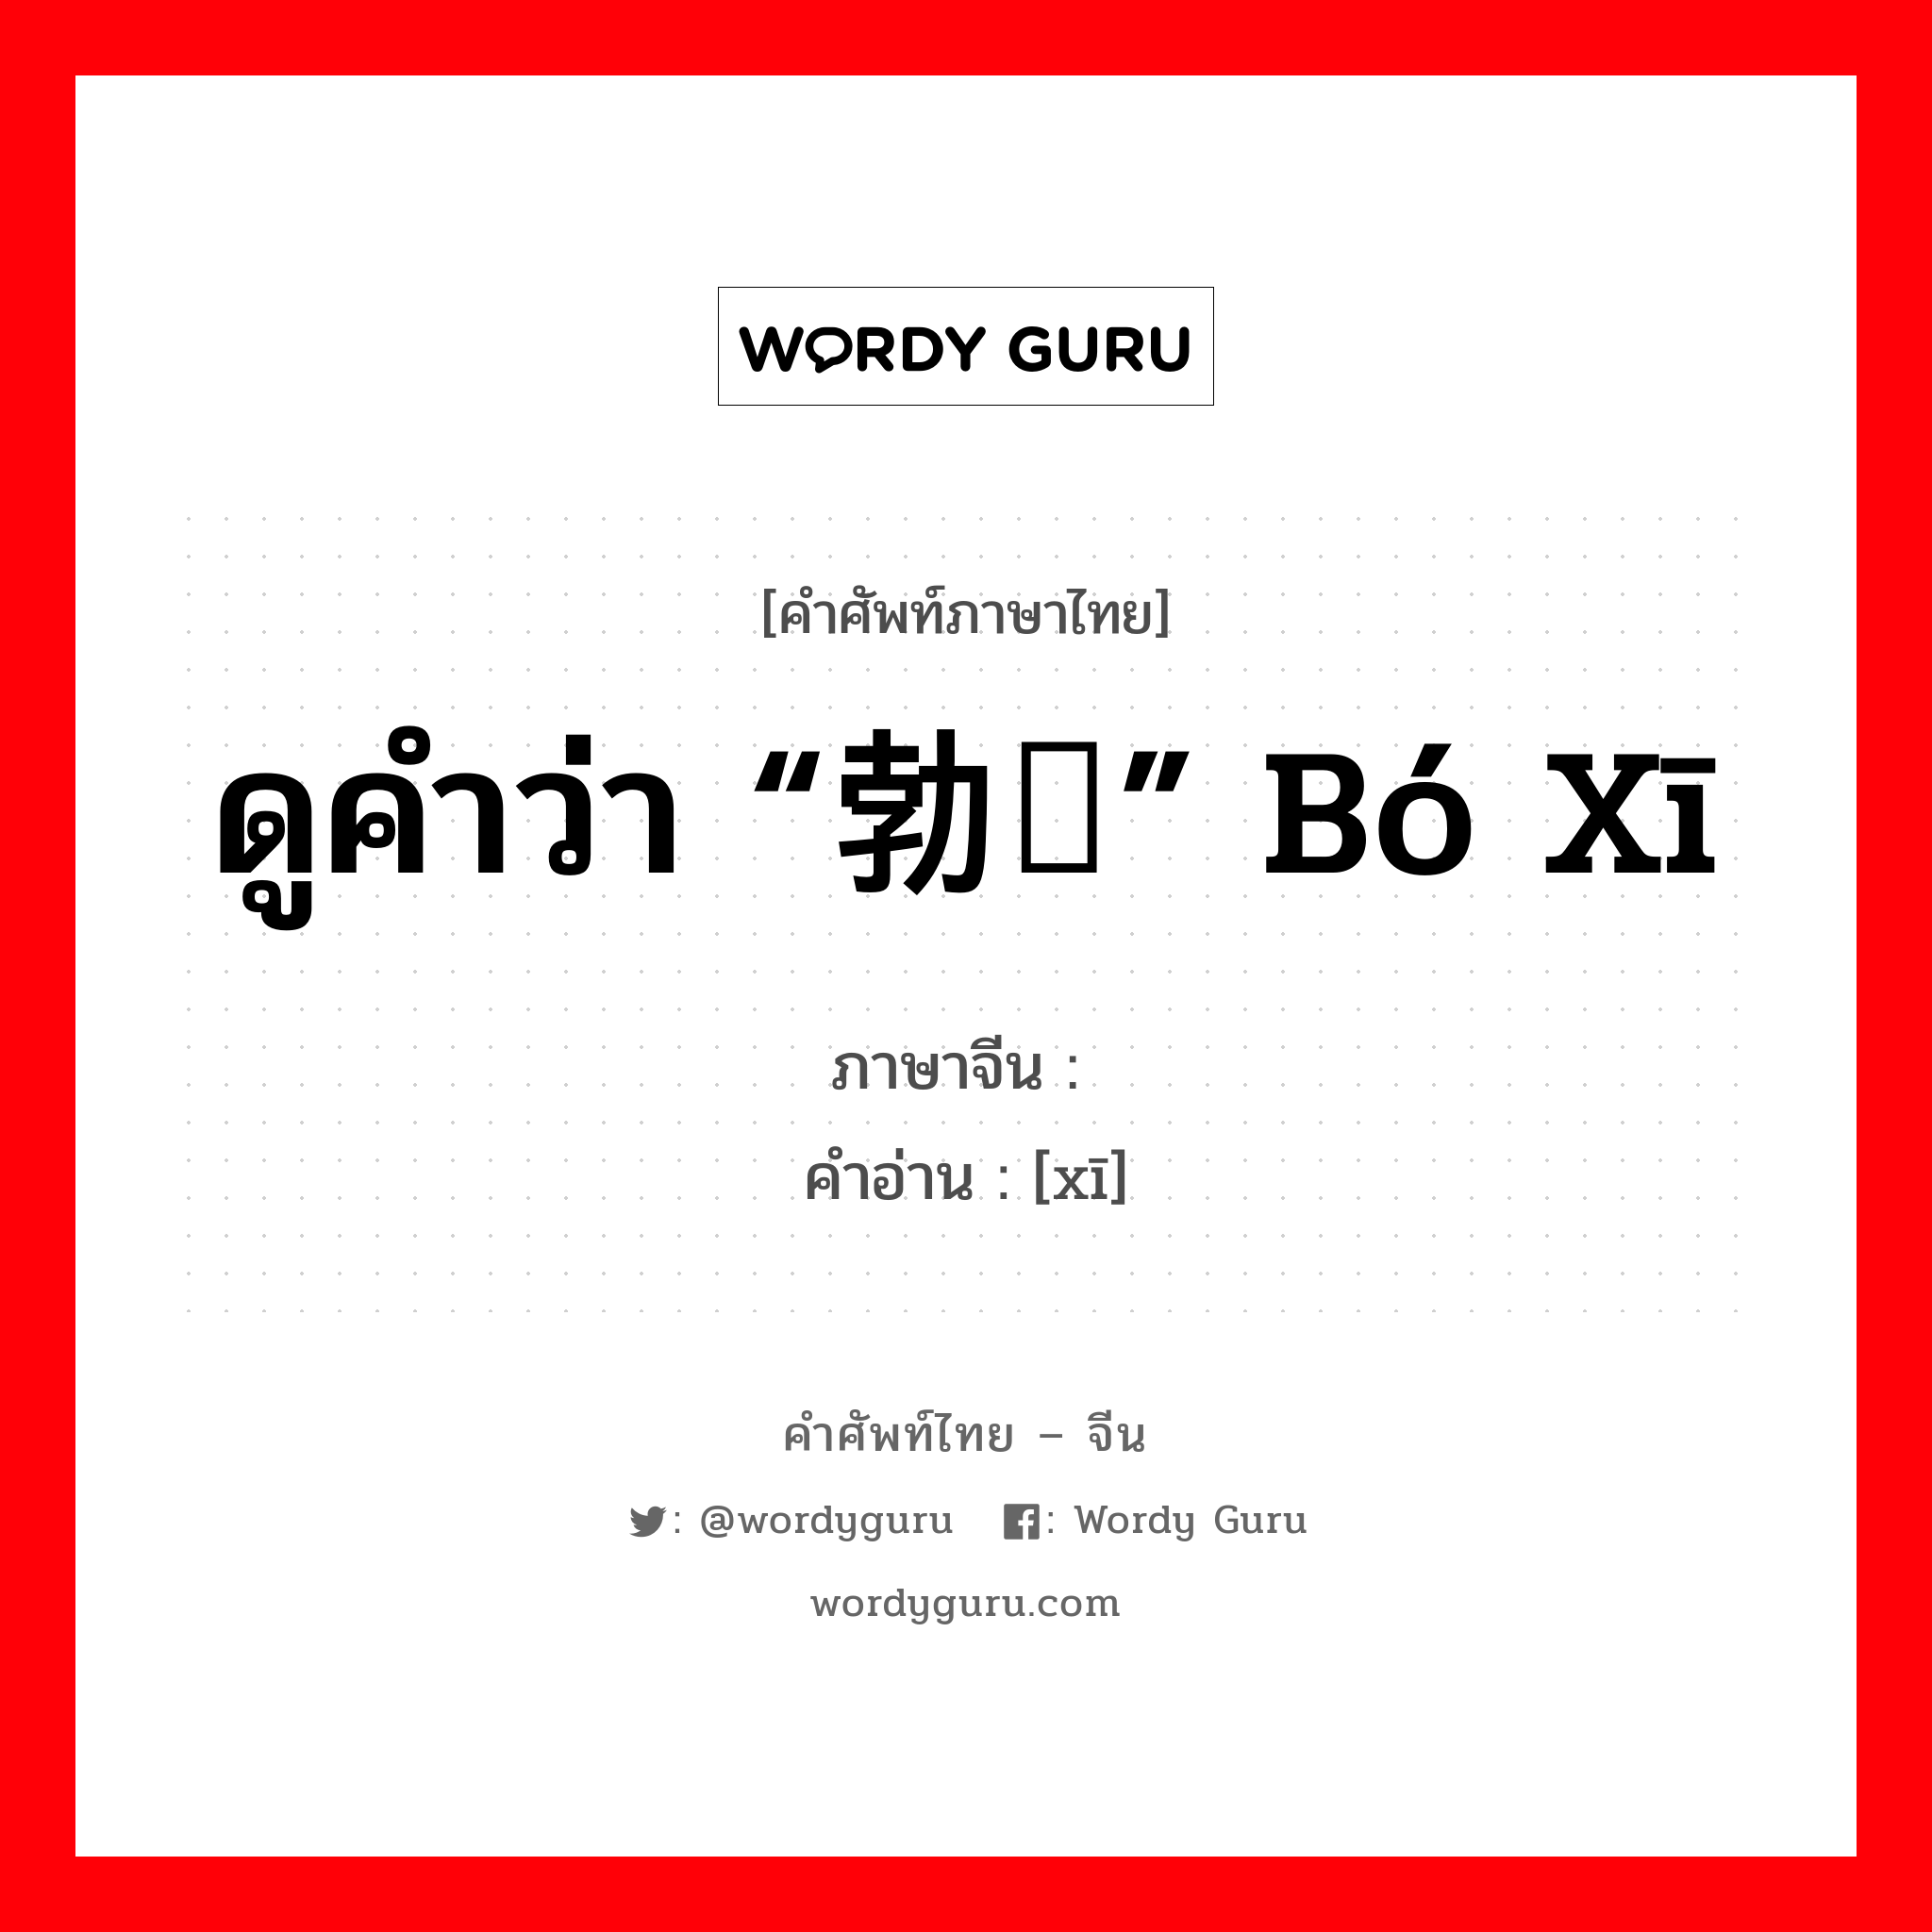 ดูคำว่า “勃豀” bó xī ภาษาจีนคืออะไร, คำศัพท์ภาษาไทย - จีน ดูคำว่า “勃豀” bó xī ภาษาจีน 豀 คำอ่าน [xī]